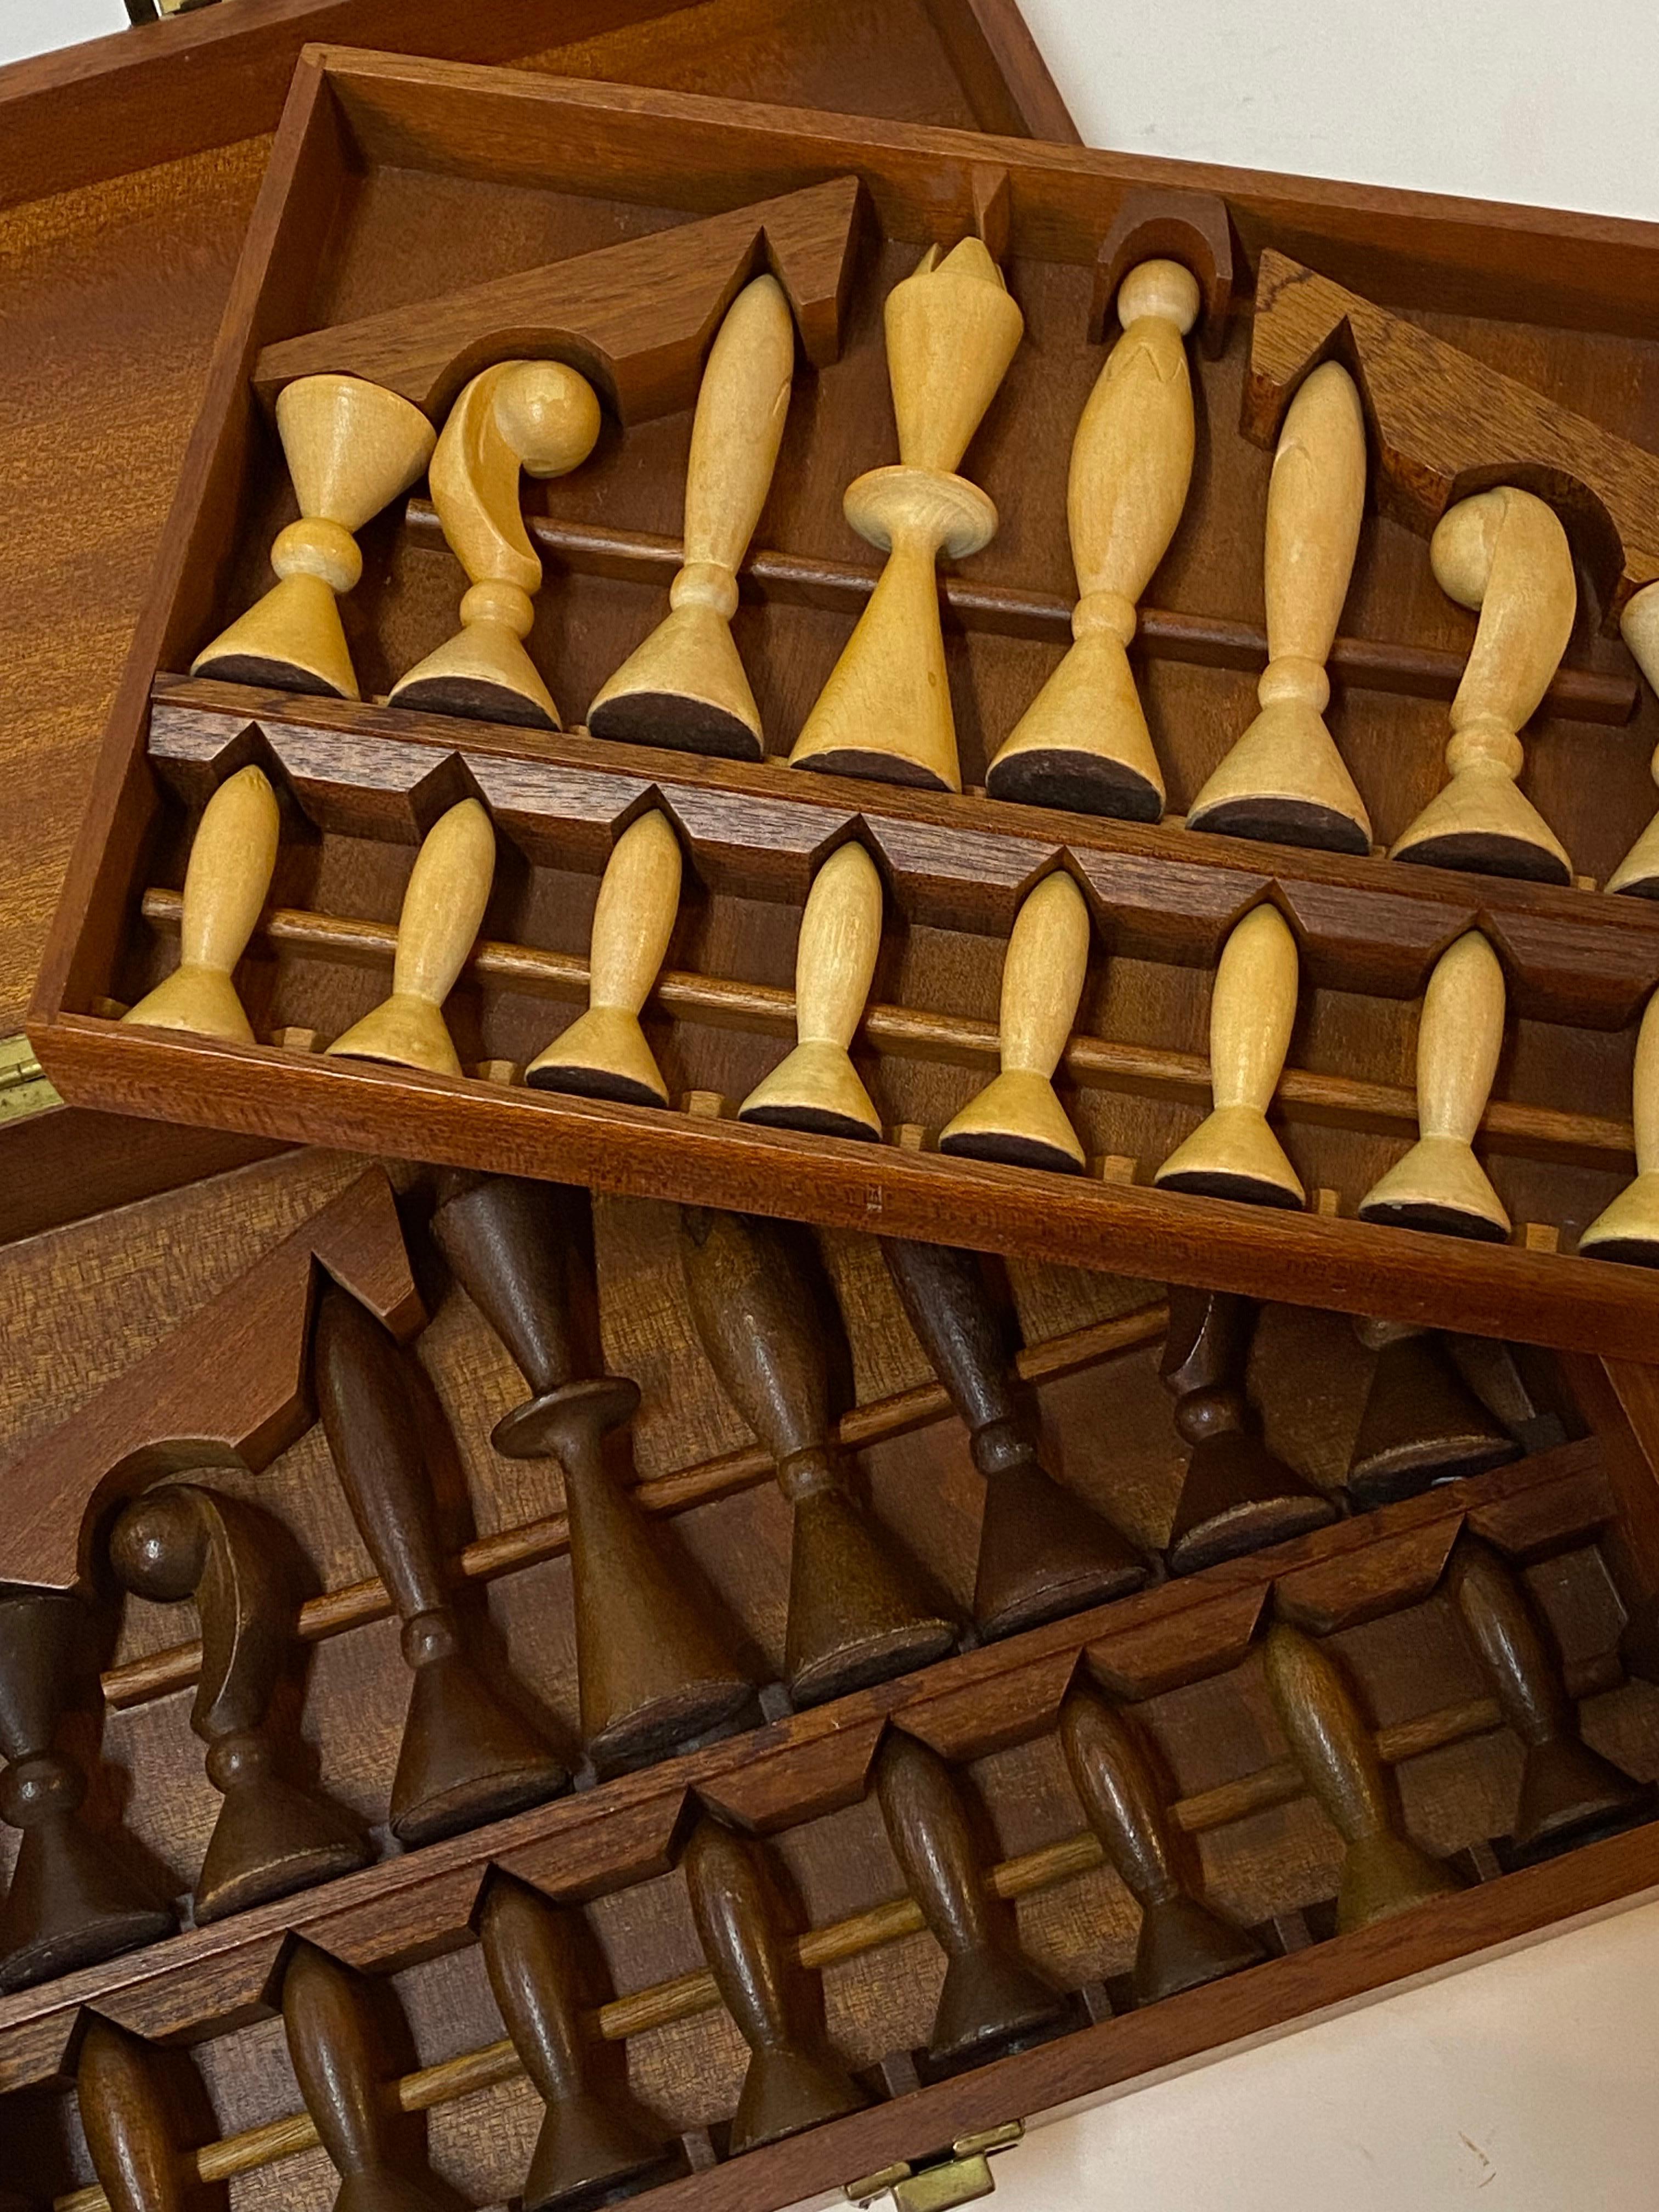 Ein schöner Satz modernistischer Schachfiguren aus geschnitztem Holz in einer Schachtel. Die beiden Sets sind aus Hartholz gefertigt und in sehr stilisierten Formen geschnitzt. Ein Set ist in blondem Holz naturbelassen, das andere in braunem